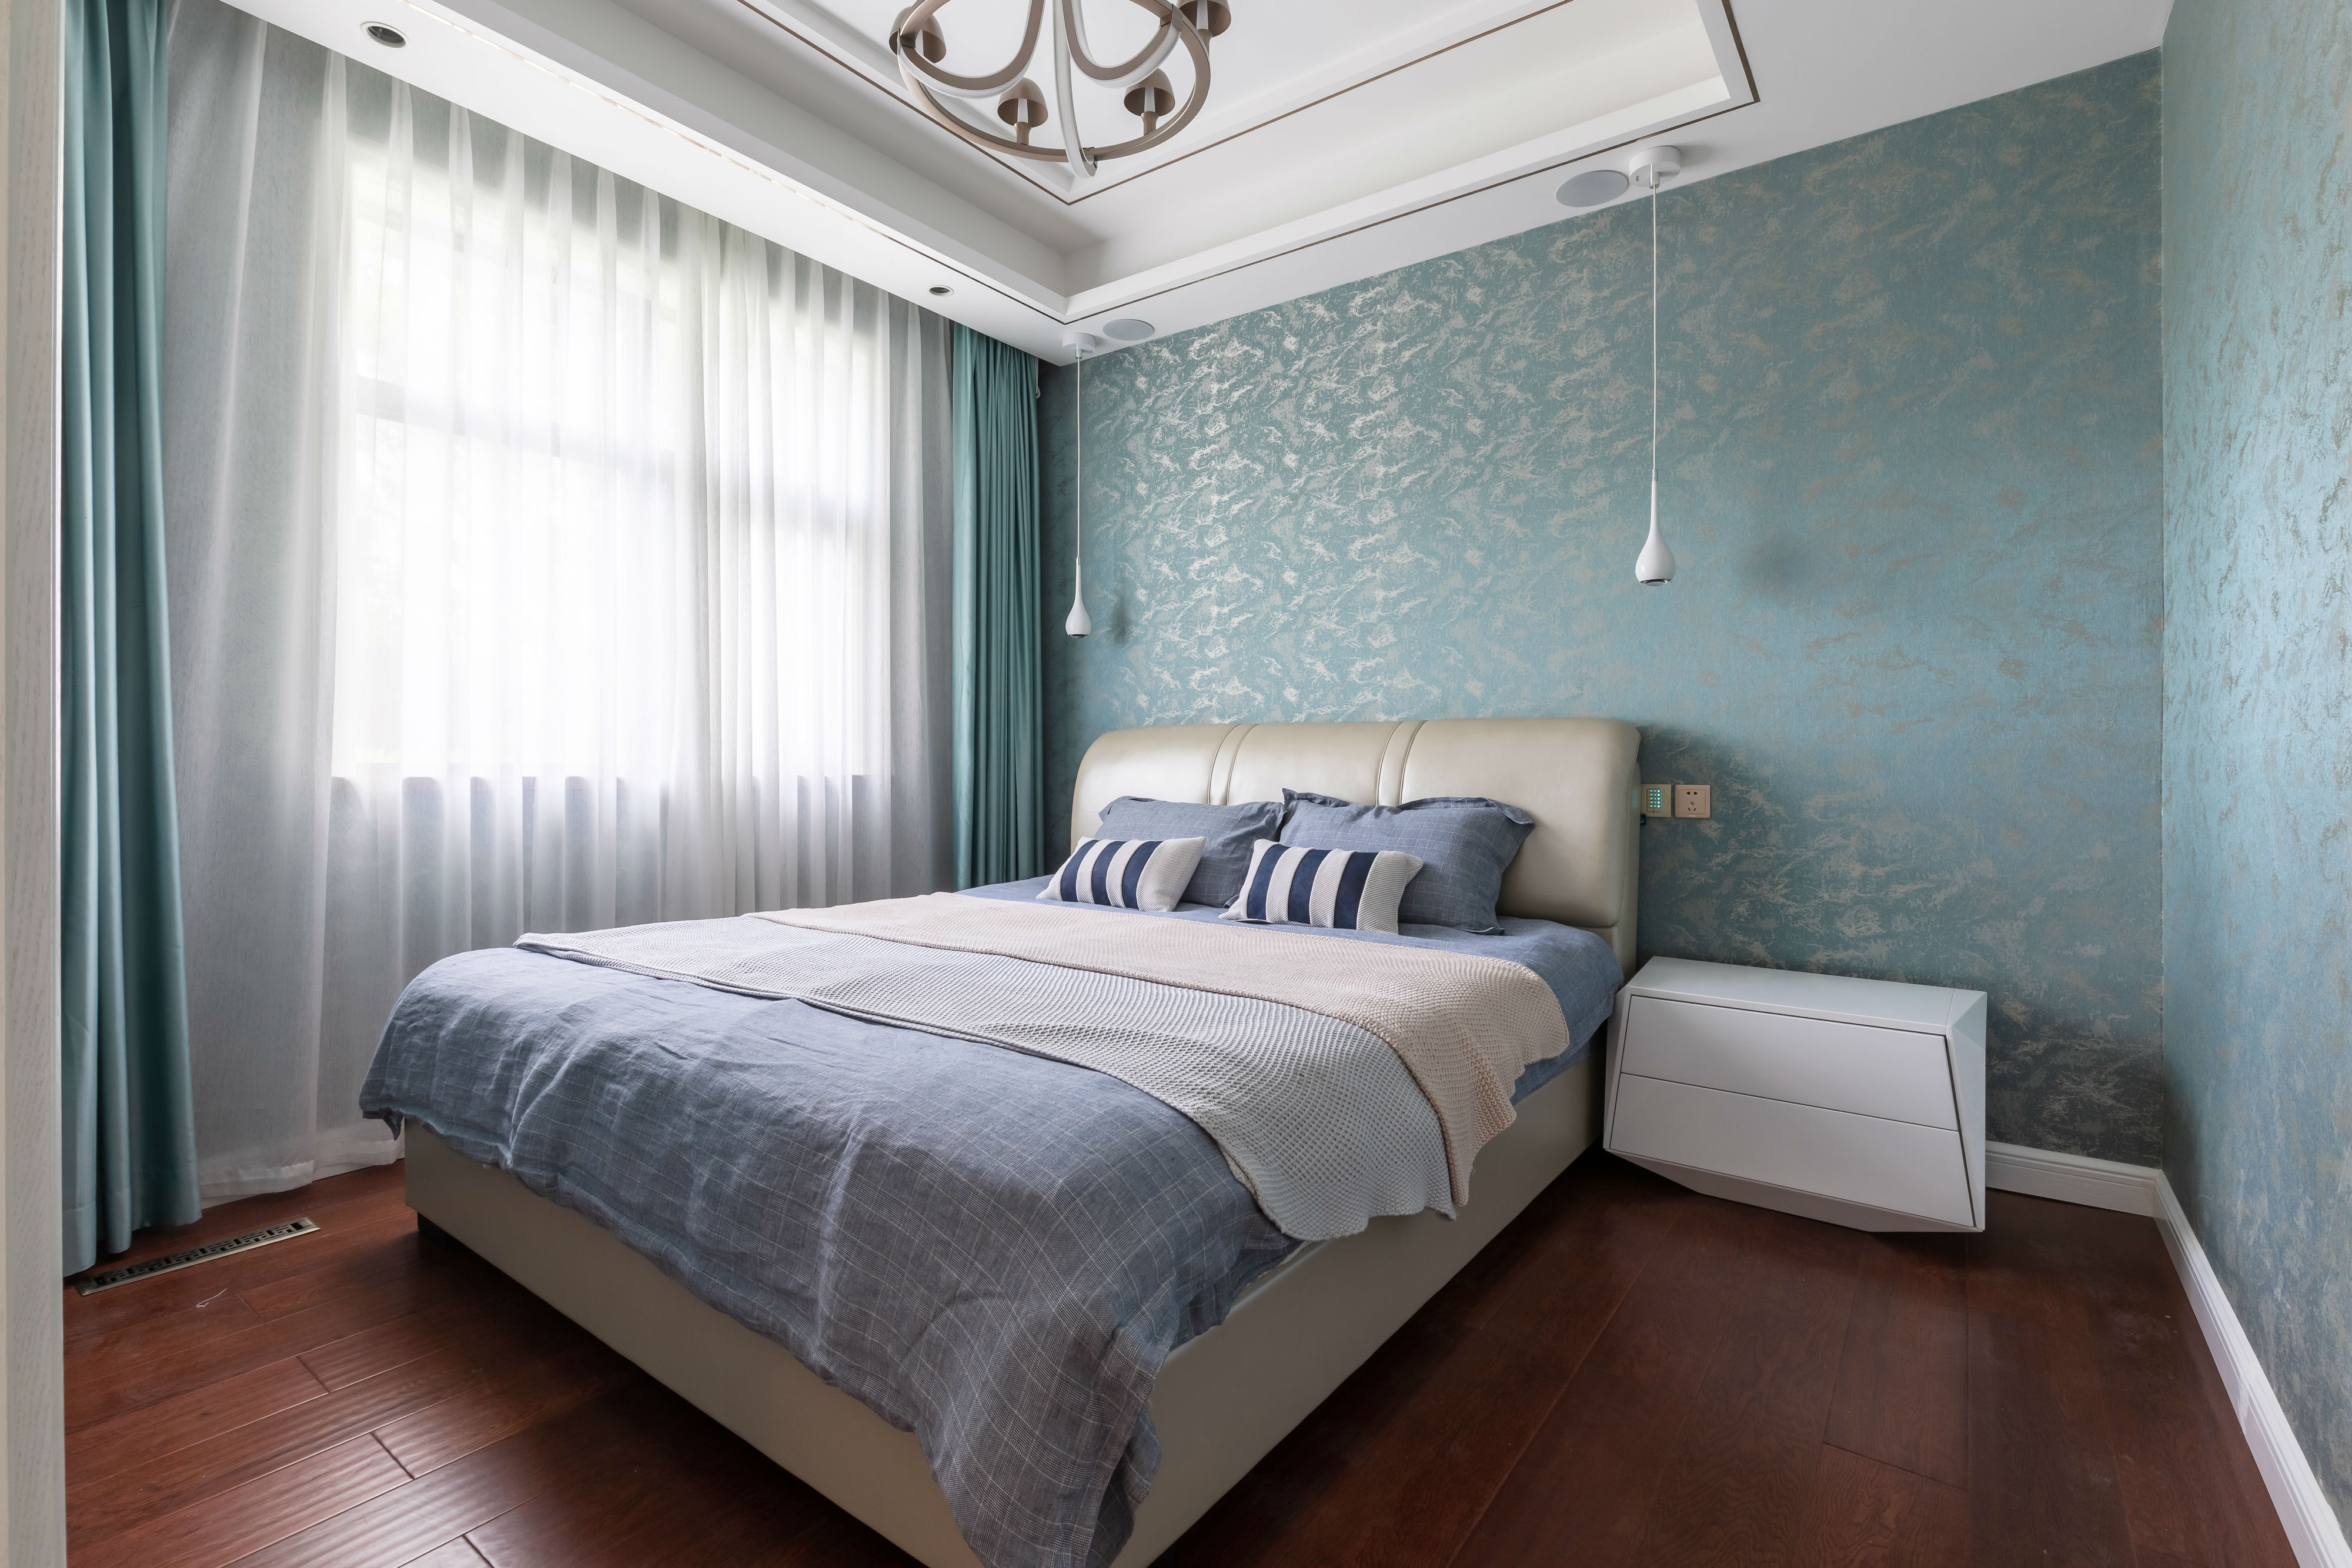 卧室窗帘5装修效果图精致70平混搭复式卧室装修美图混搭卧室设计图片赏析